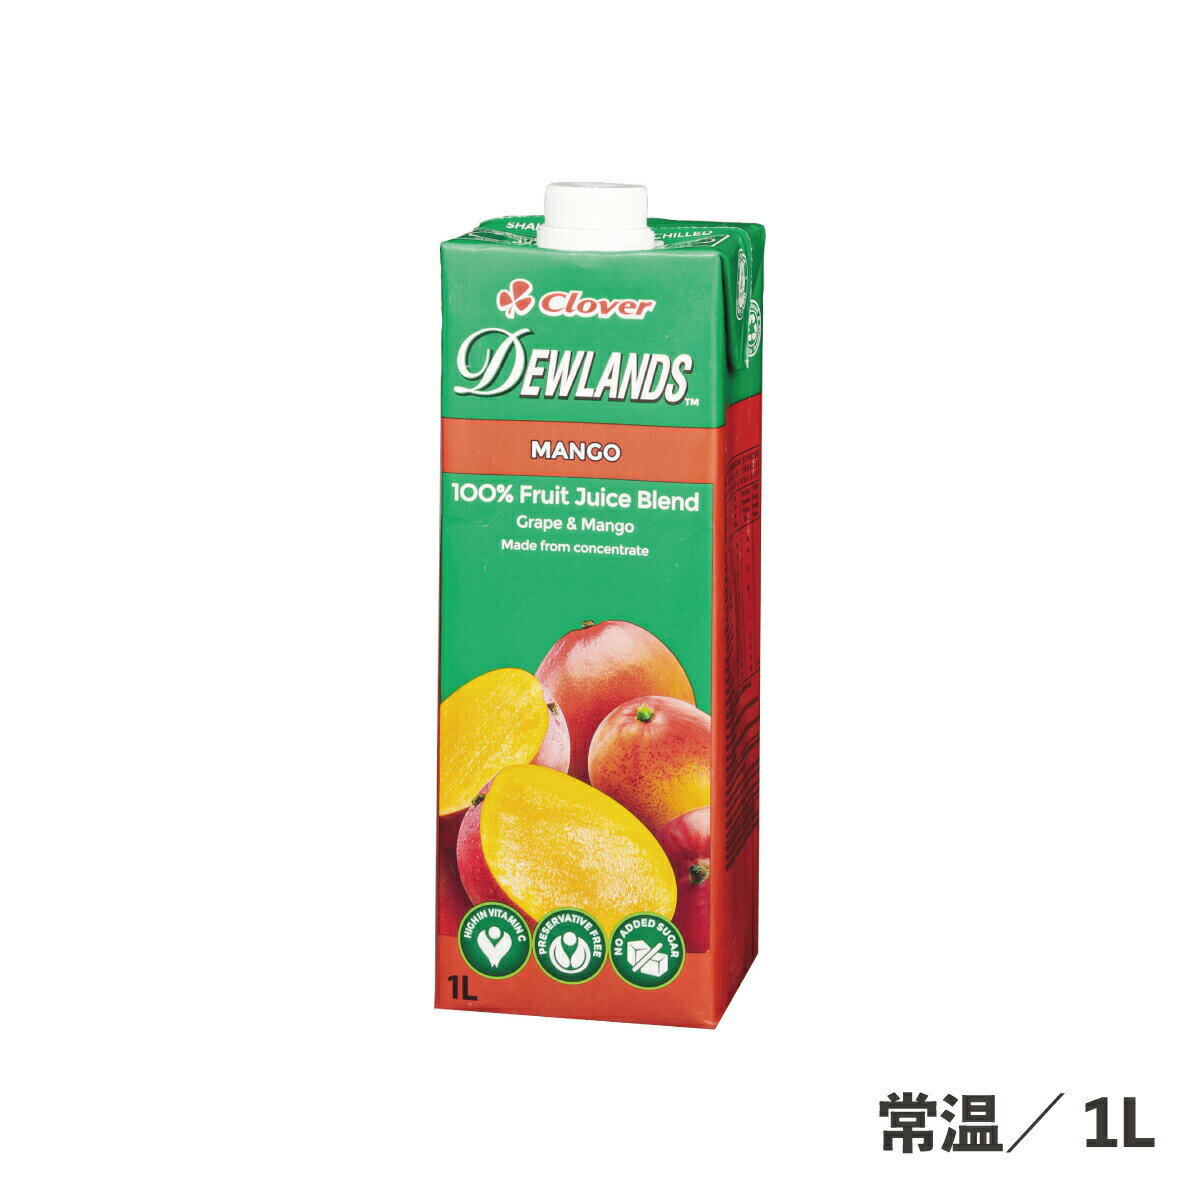 マンゴージュース 1L 常温/冷蔵 ドリンク 飲料 ジュース フルーツ 果物 マンゴー りんご パック 食品 業務用